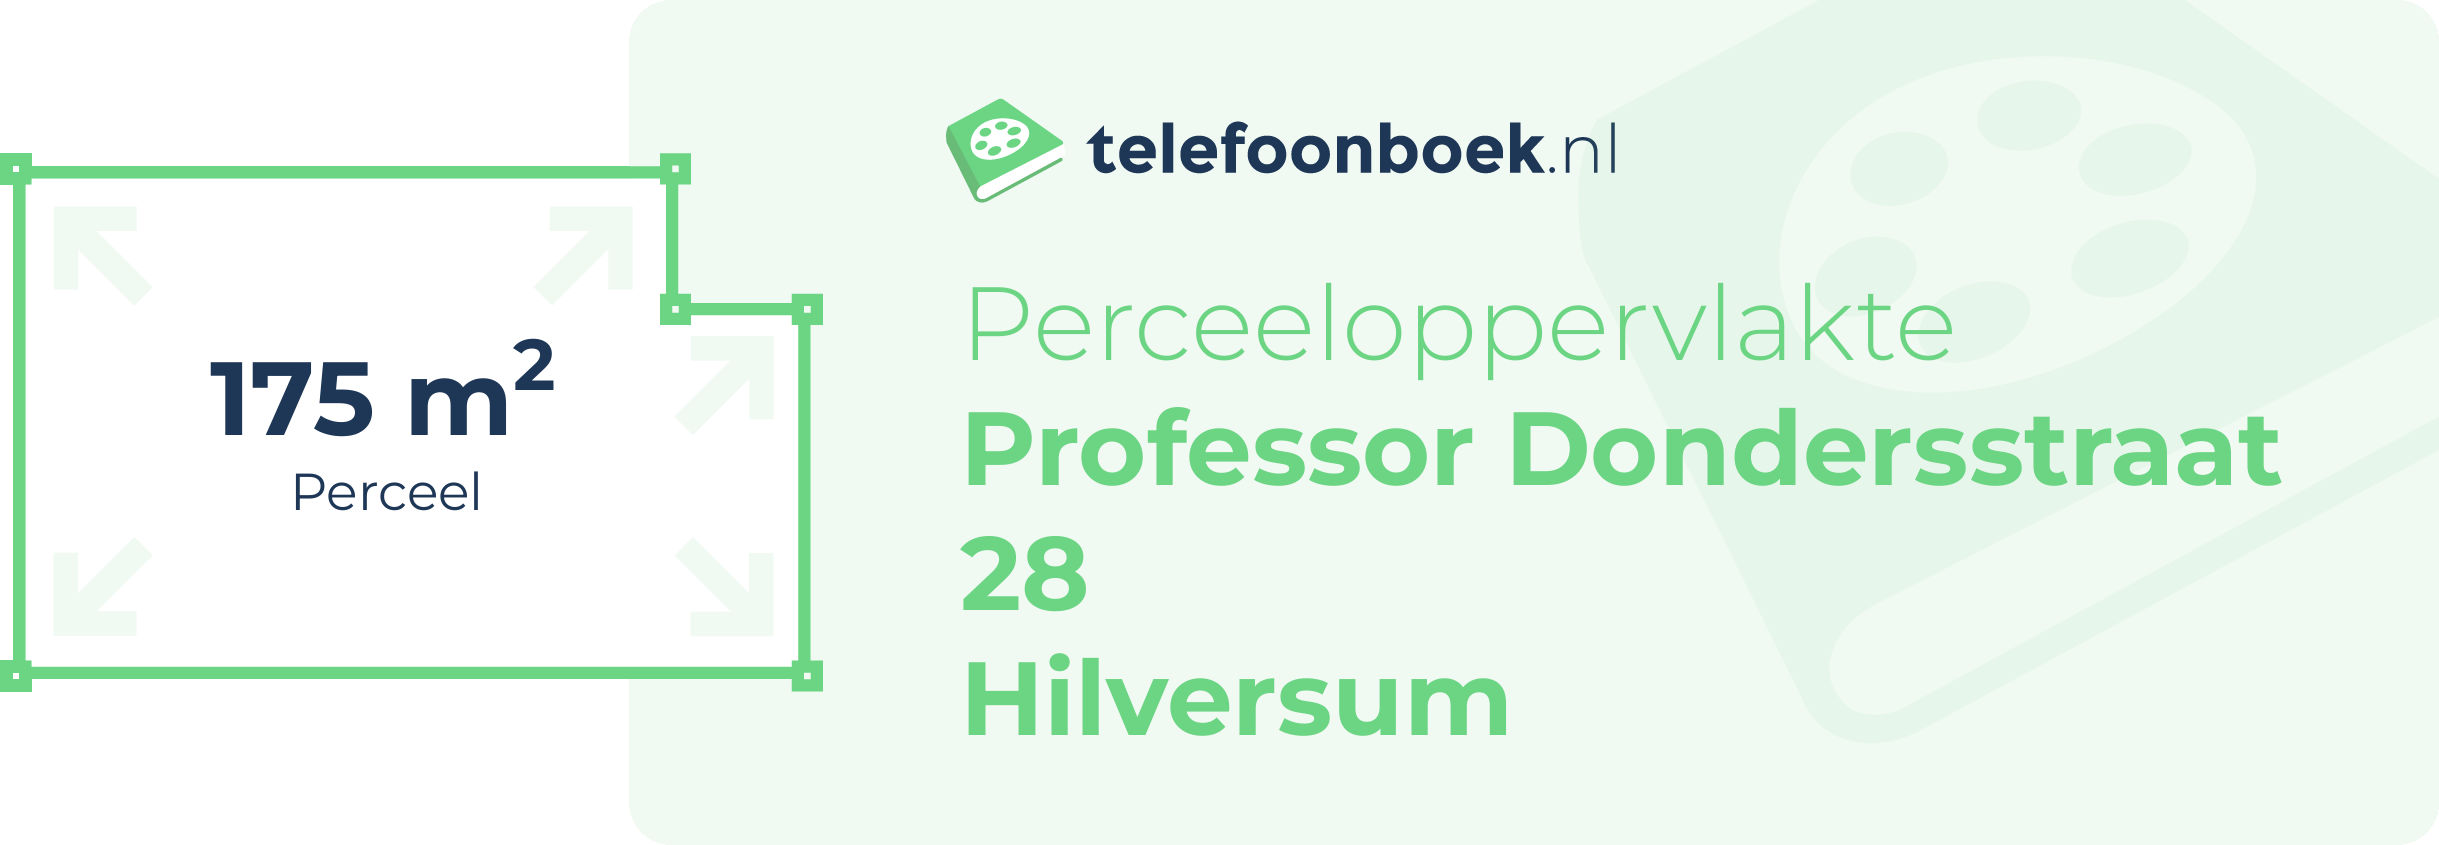 Perceeloppervlakte Professor Dondersstraat 28 Hilversum